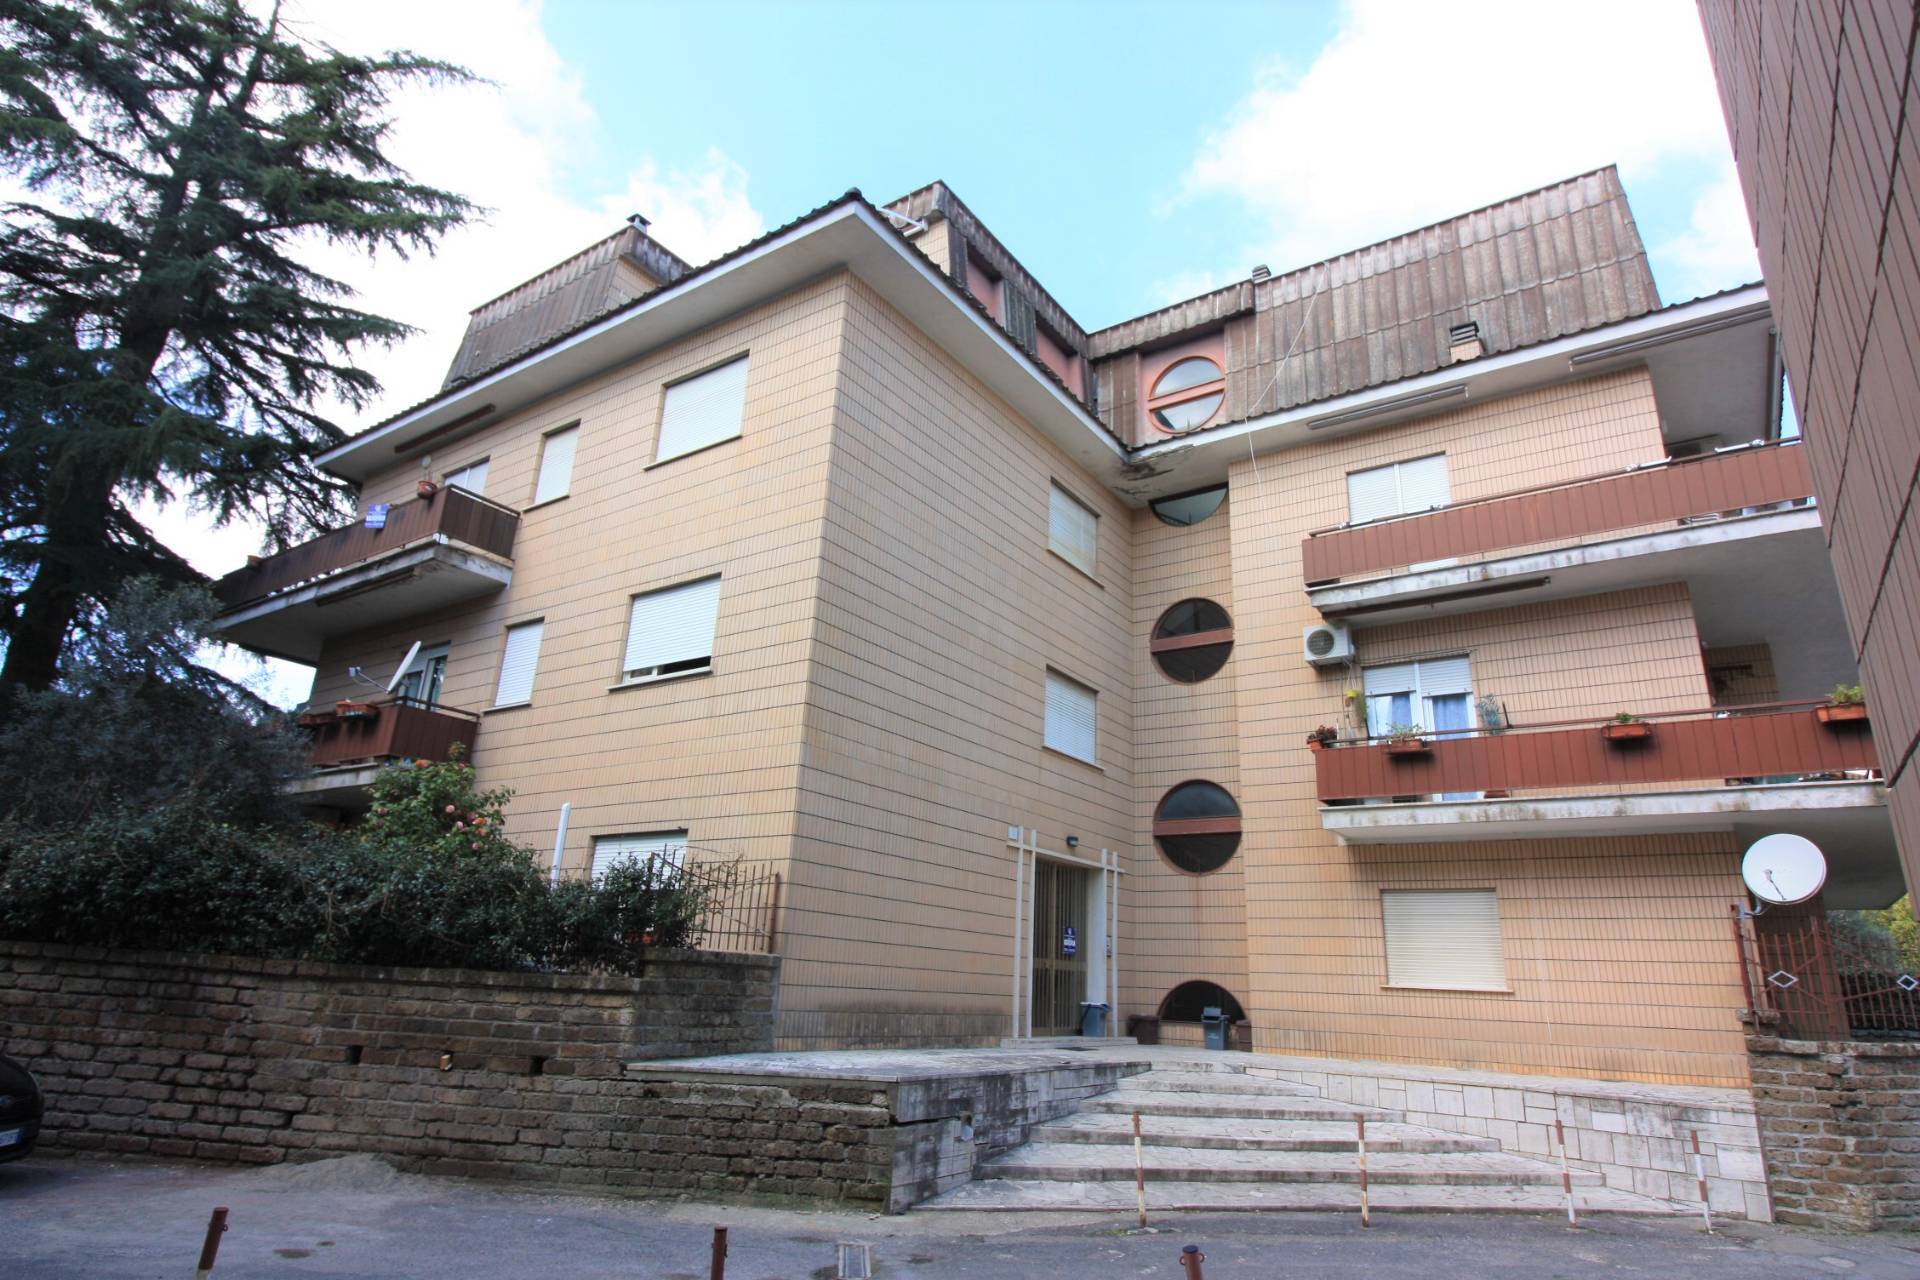 Appartamento in vendita a Ronciglione, 5 locali, zona Località: semi-centrale, prezzo € 72.000 | CambioCasa.it